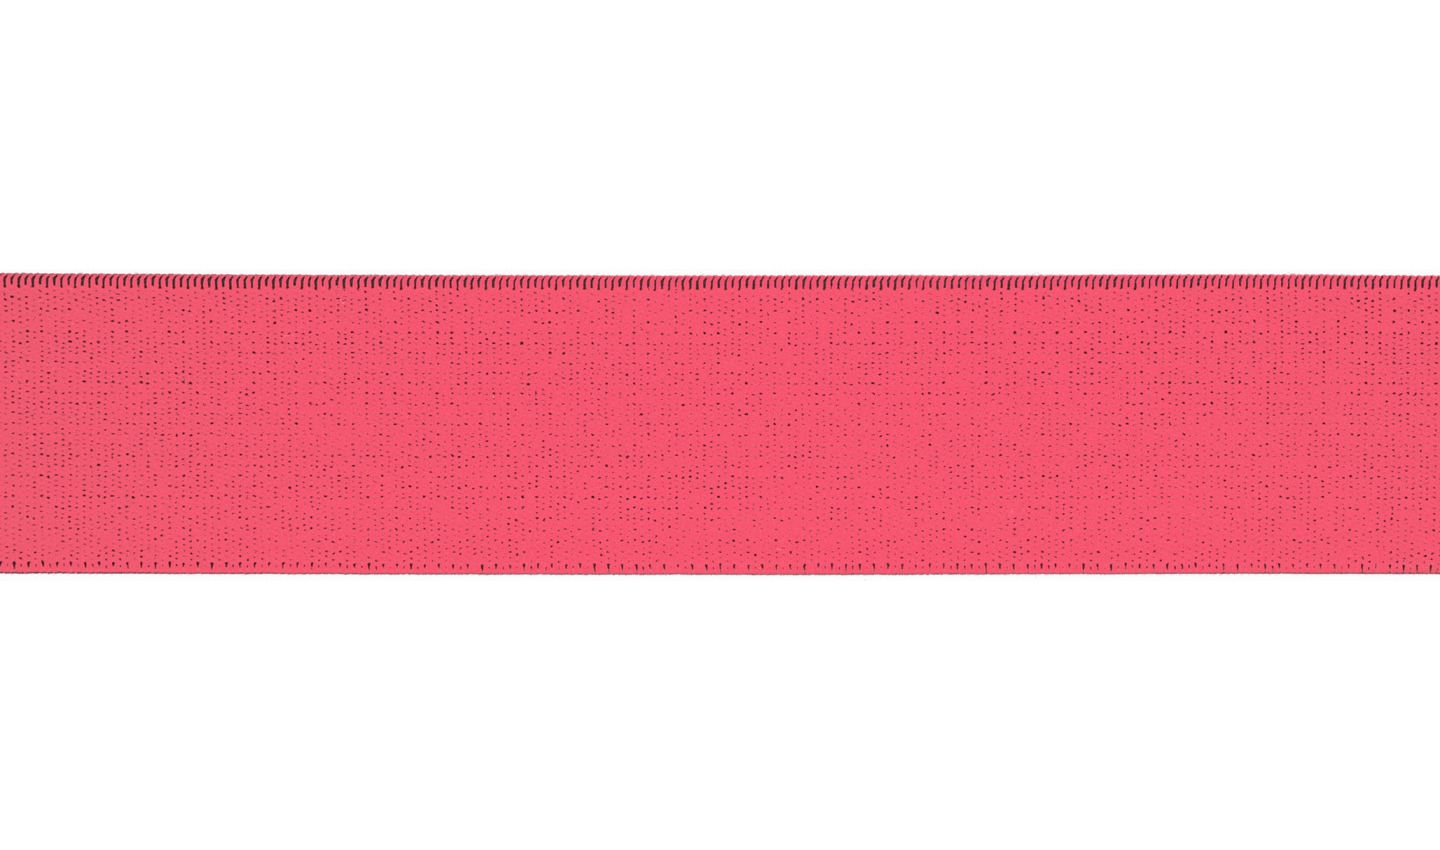 Gummiband 30mm uni neon pink (594)   